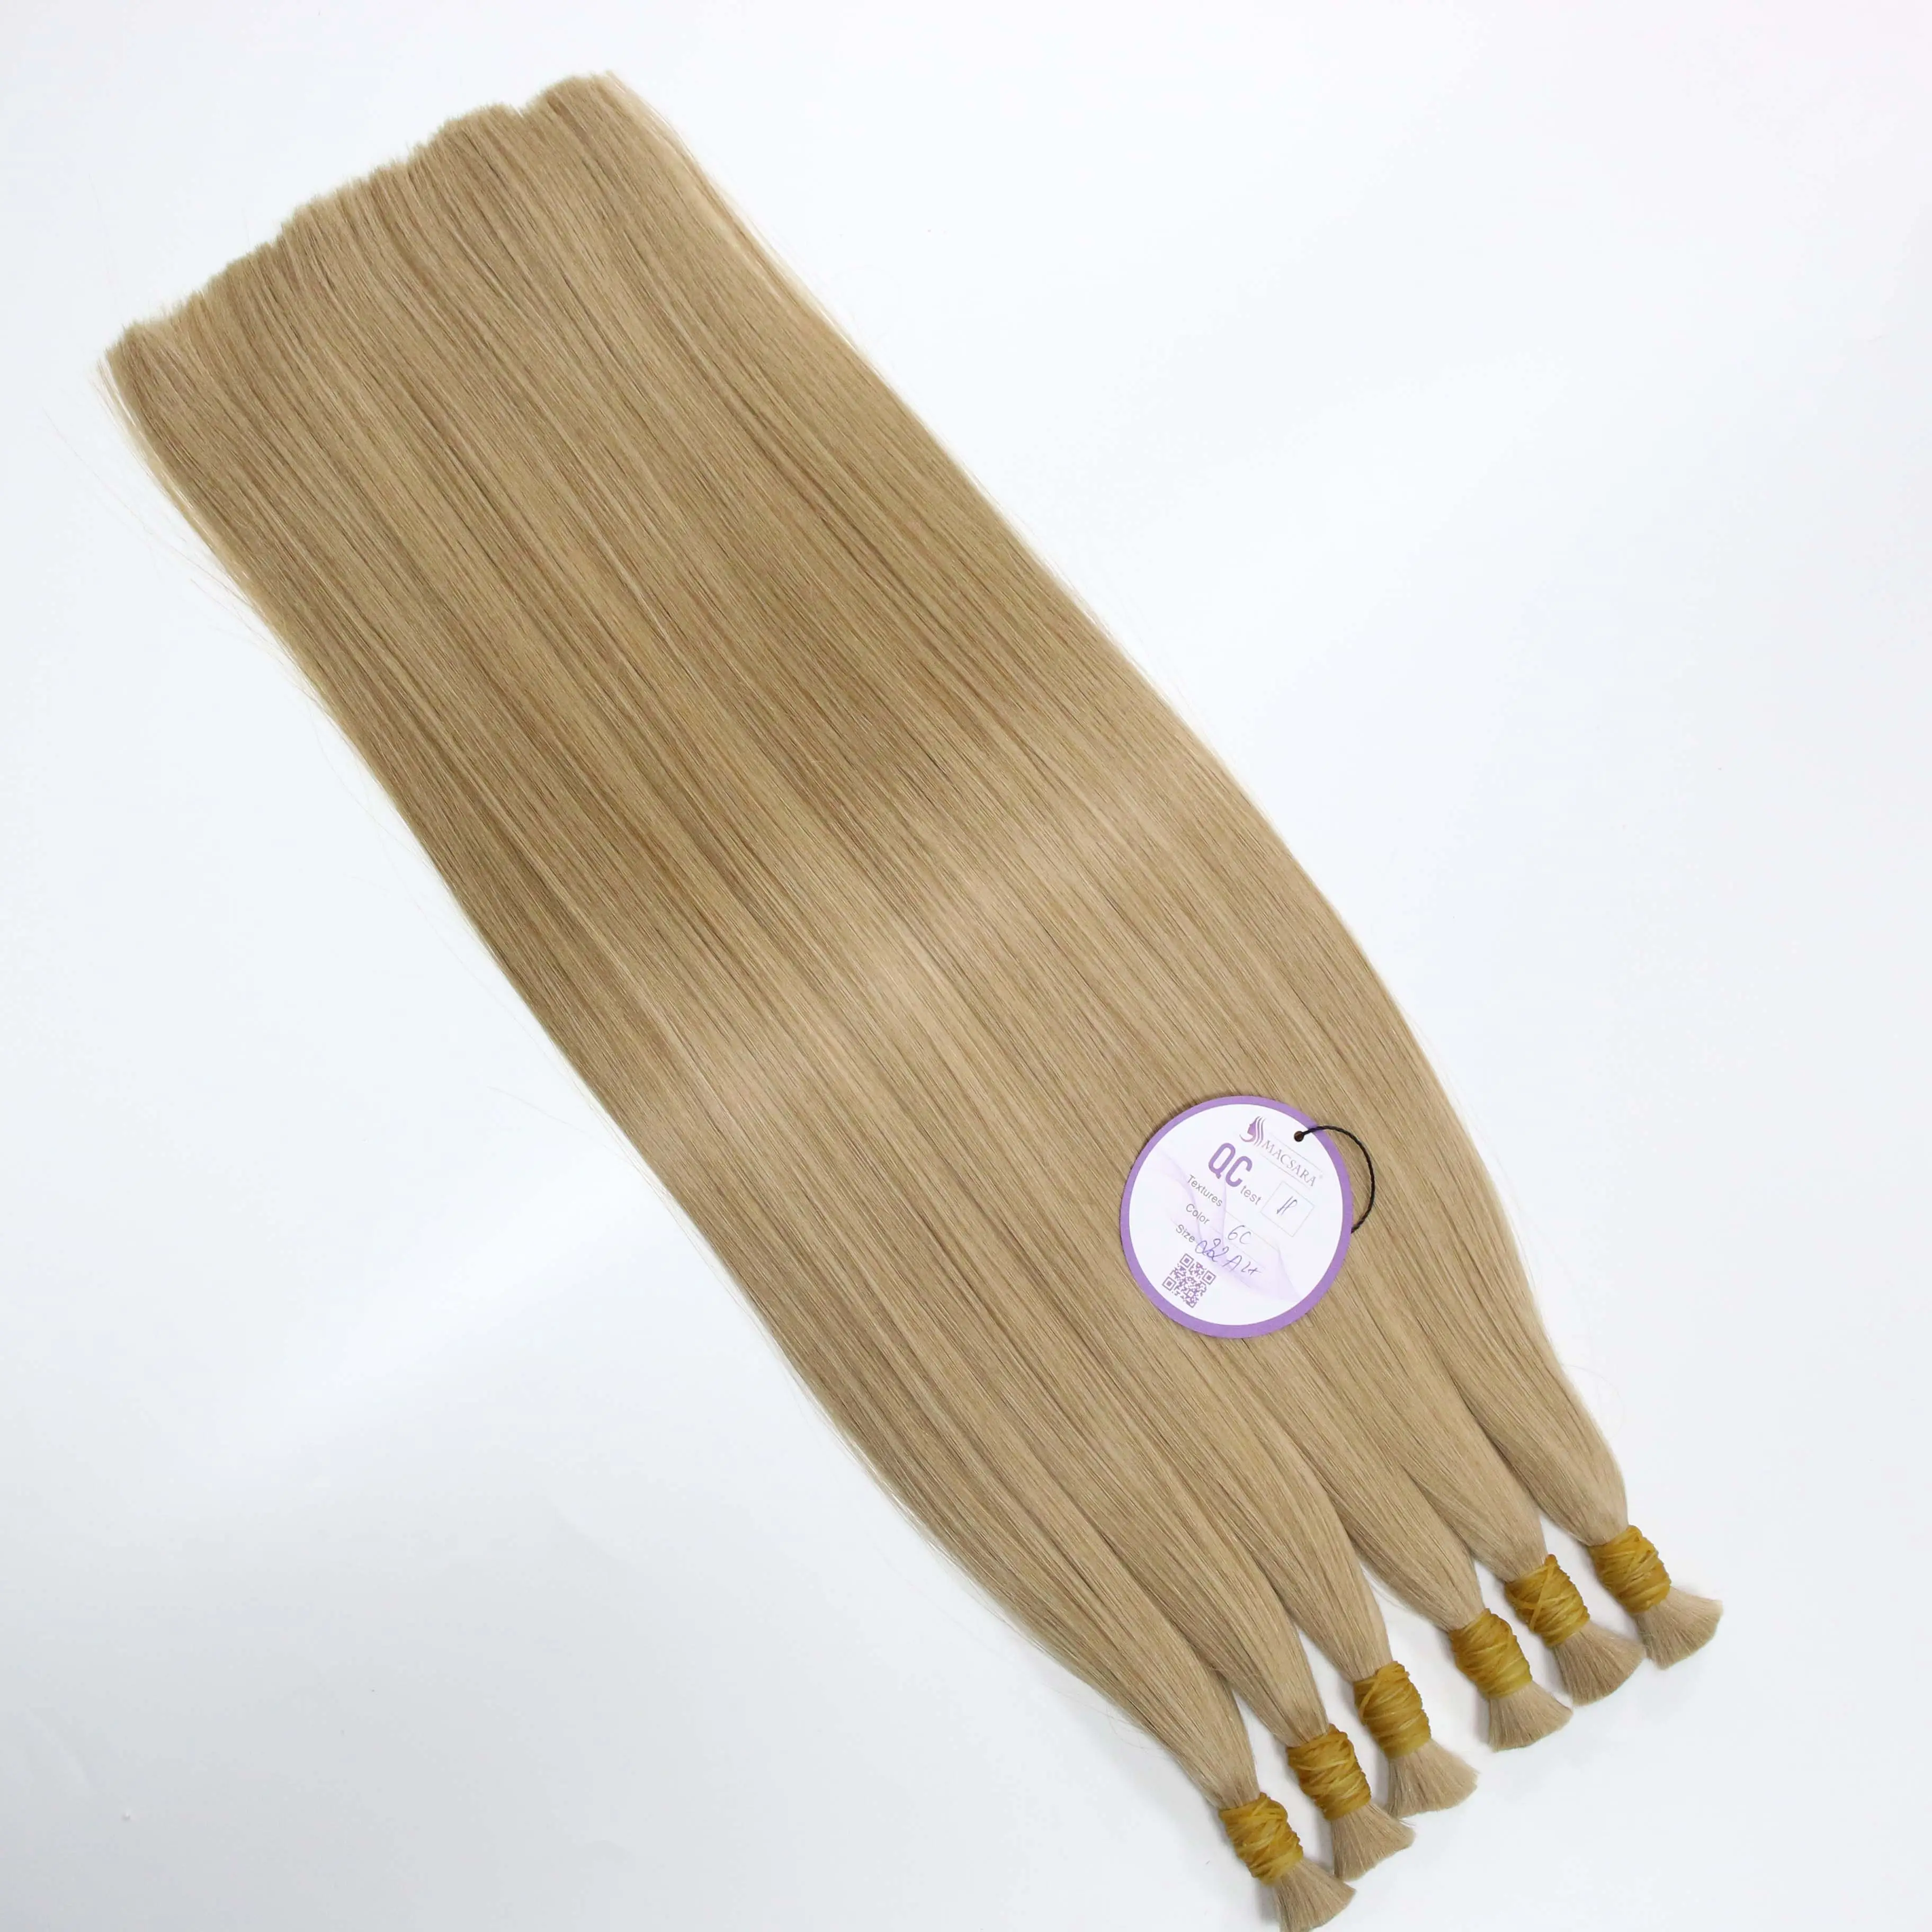 Raw hair bundles Vietnamese cuticle aligned hair wholesale luxury Coletas Pigtail bulk Vietnam Human Hair Extension